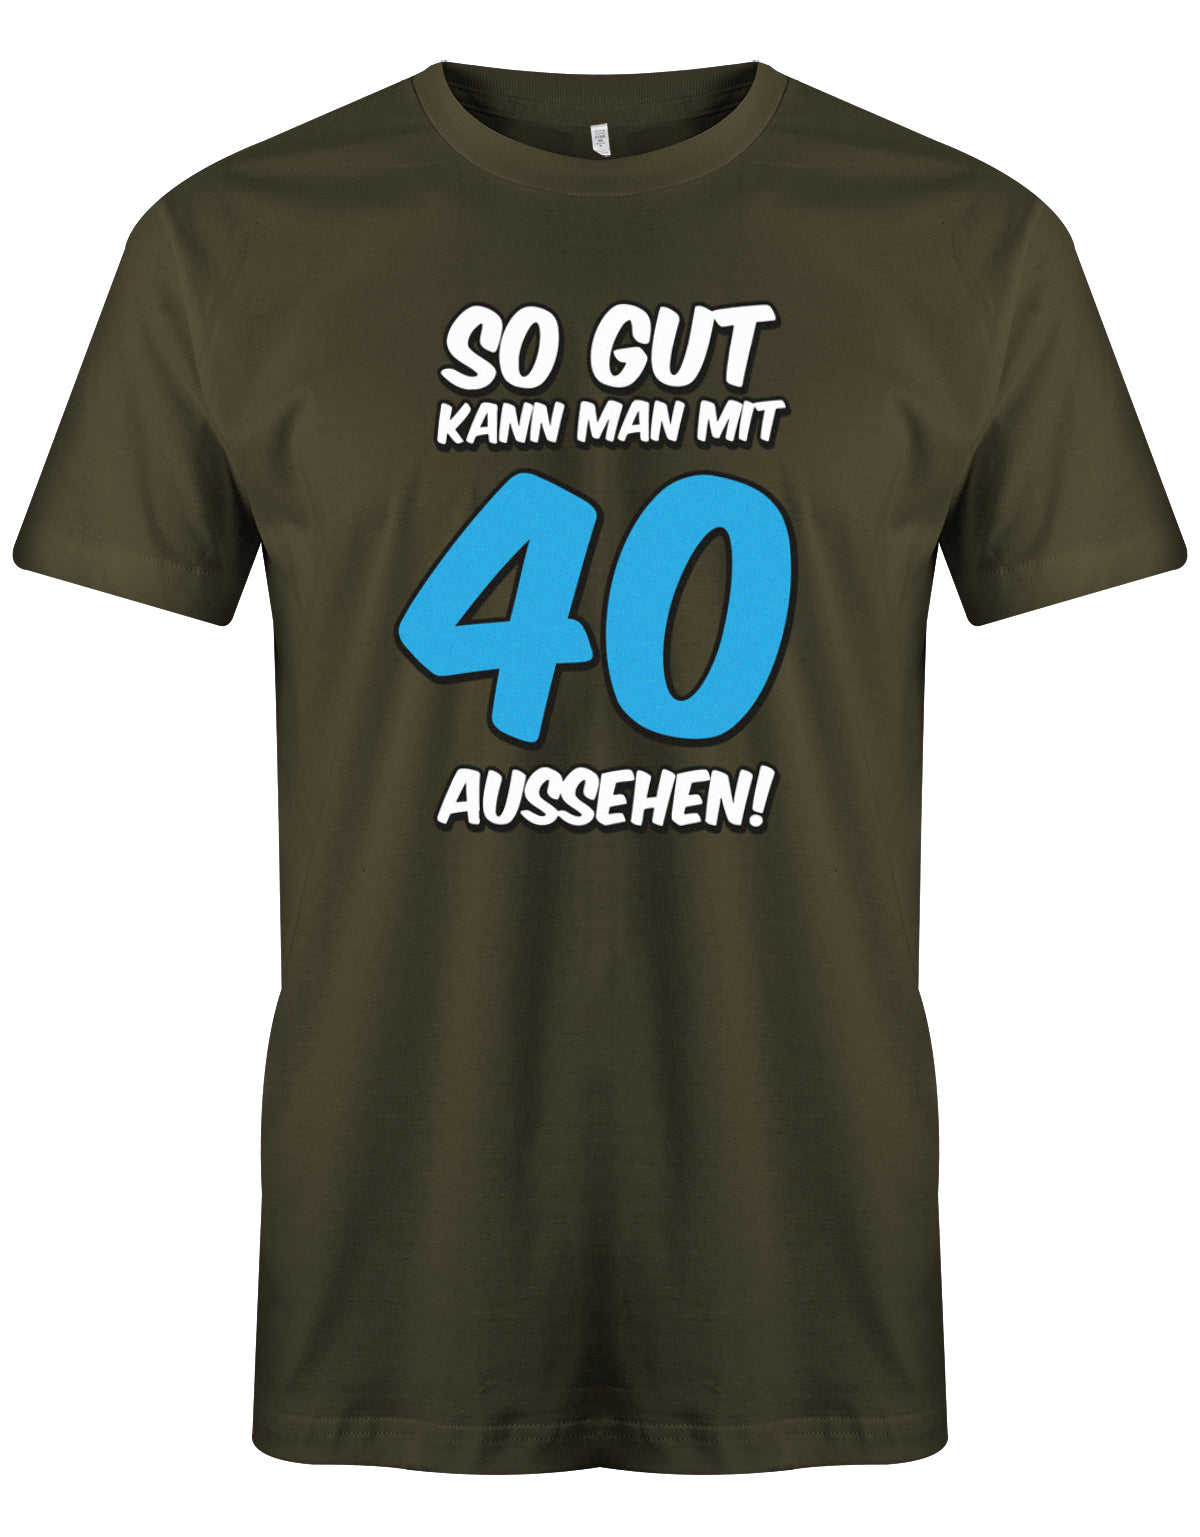 So gut kann man mit 40 aussehen 2 Farbig - T-Shirt 40 Geburtstag Männer - 1983 myshirtstore Army